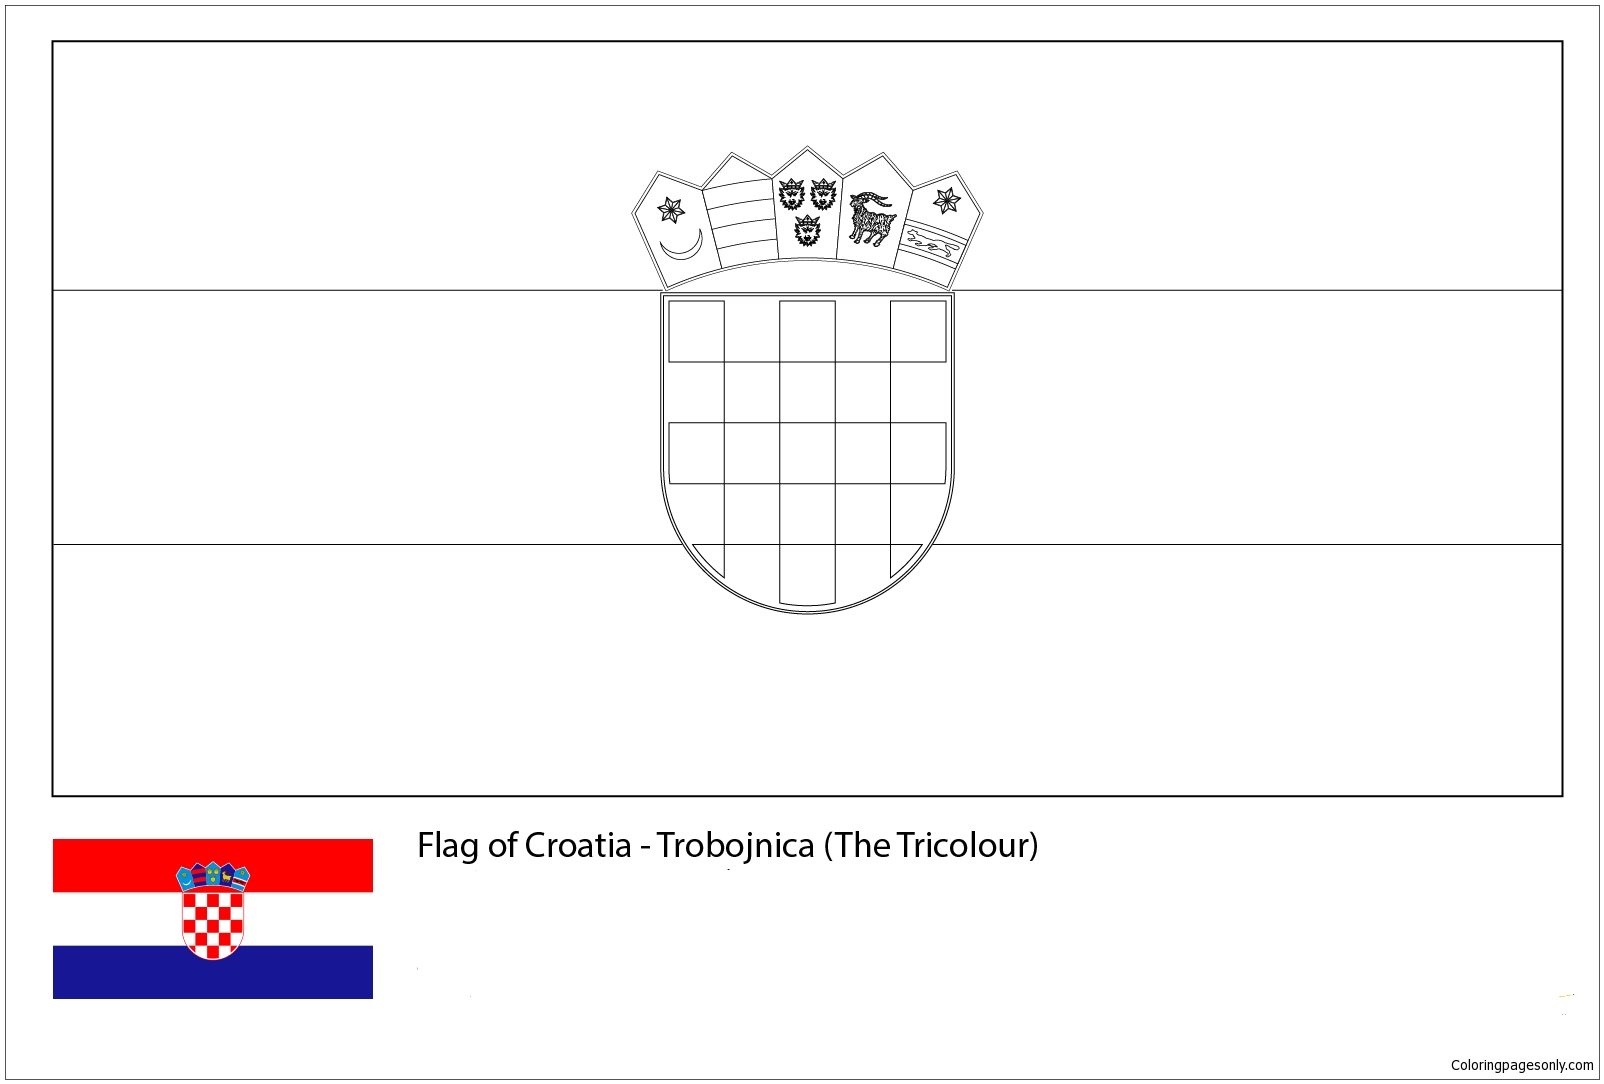 Bandiera della Croazia-Mondiali 2018 dalle Bandiere dei Mondiali 2018